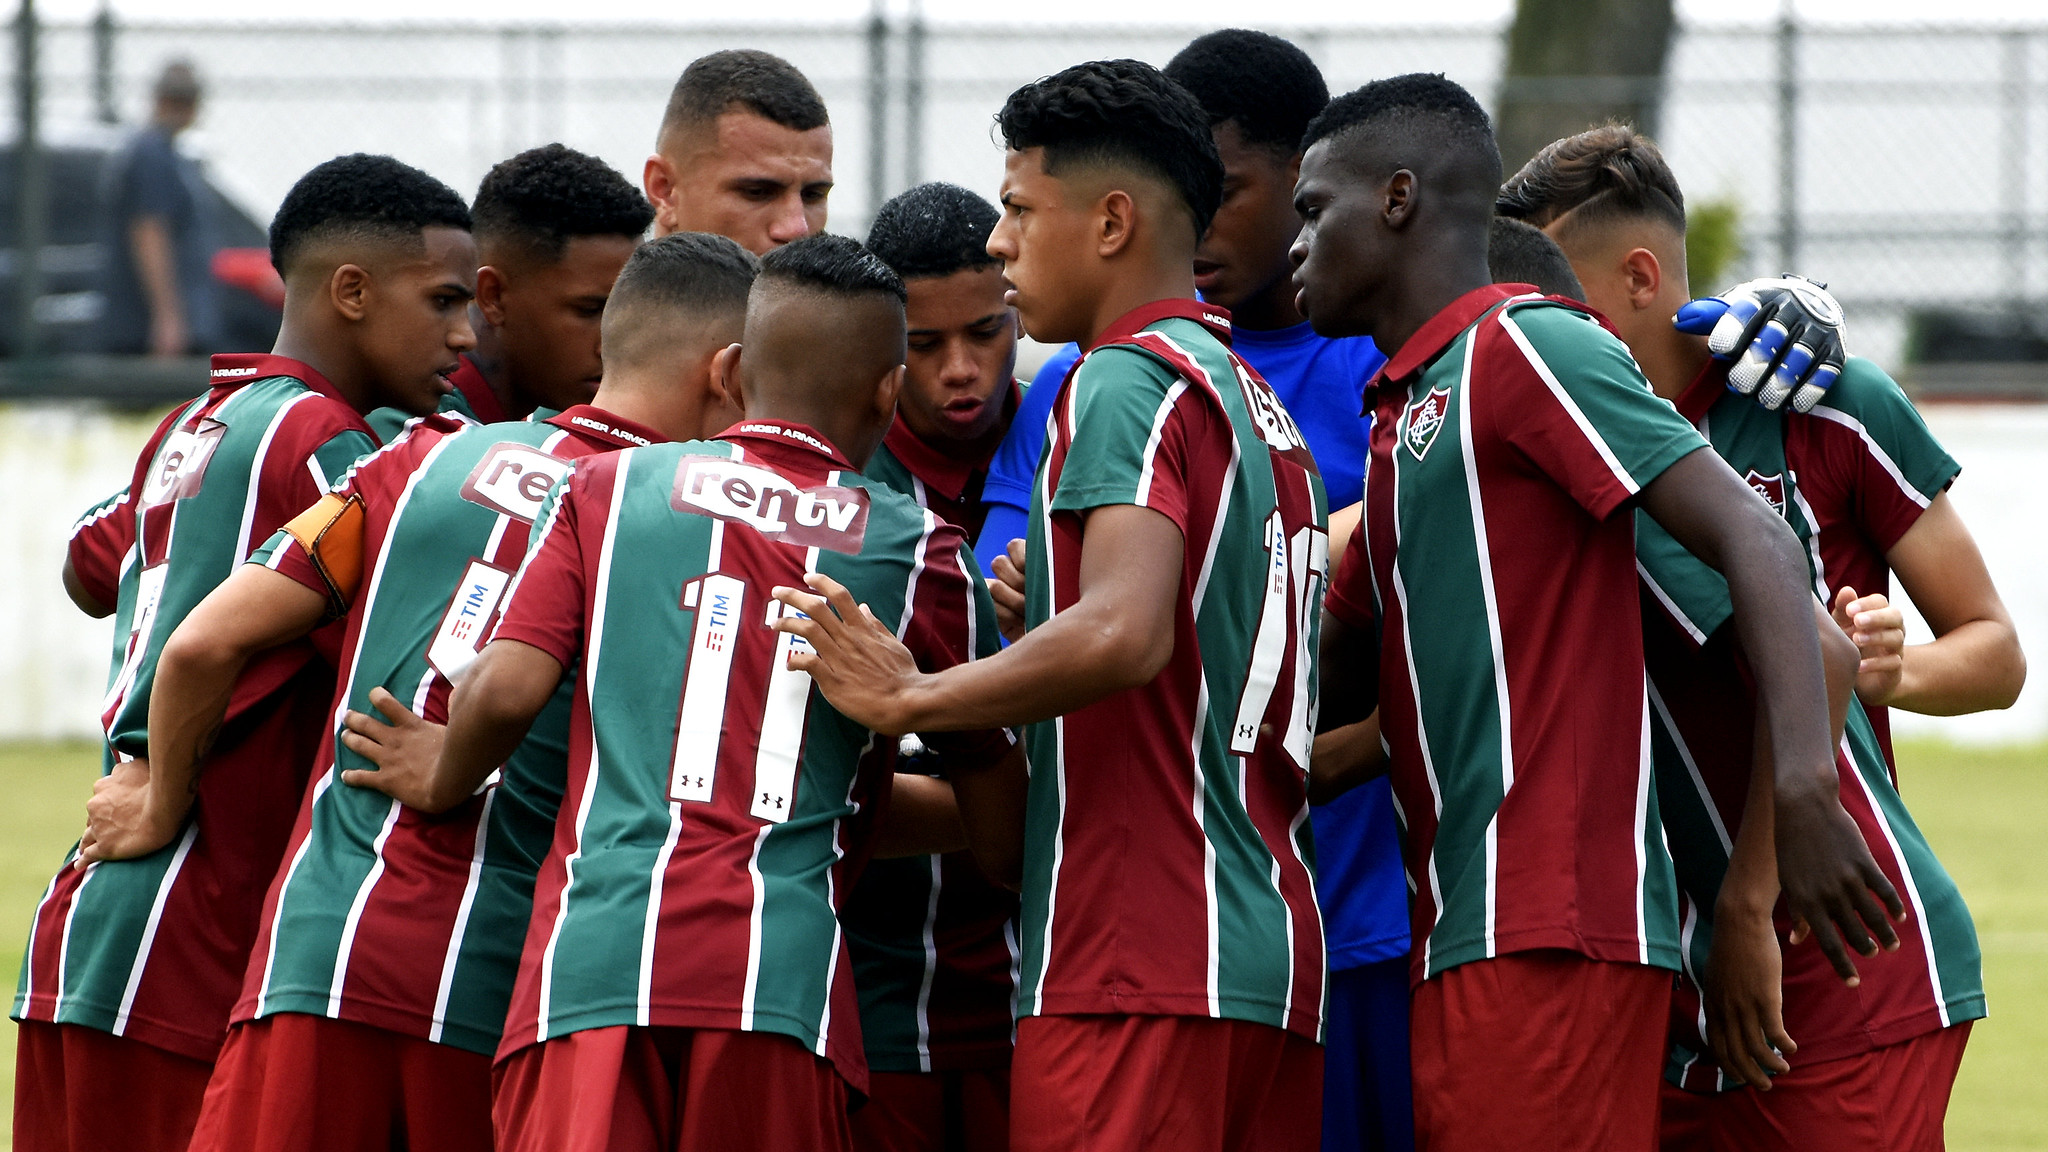 Sub-17 Fluminense x Flamengo 26/10/2019